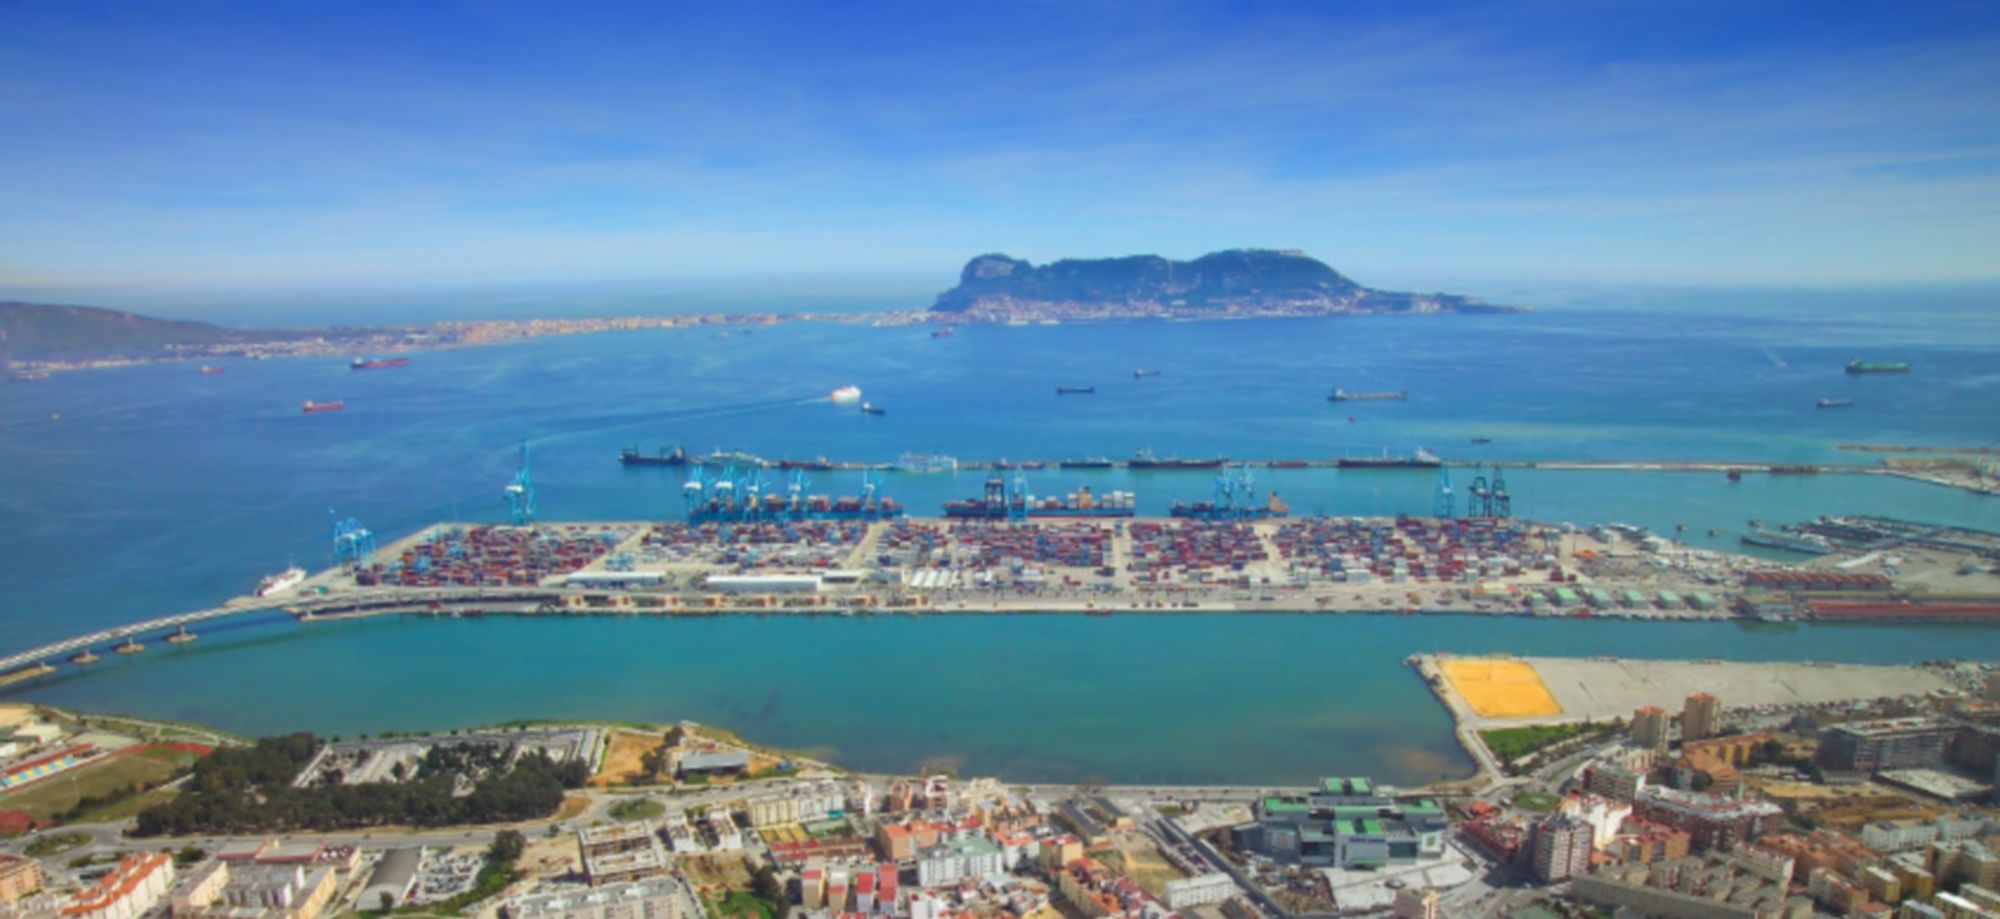 El puerto de Algeciras en una fotografía de archivo. FOTO: ALGECIRAS.ES